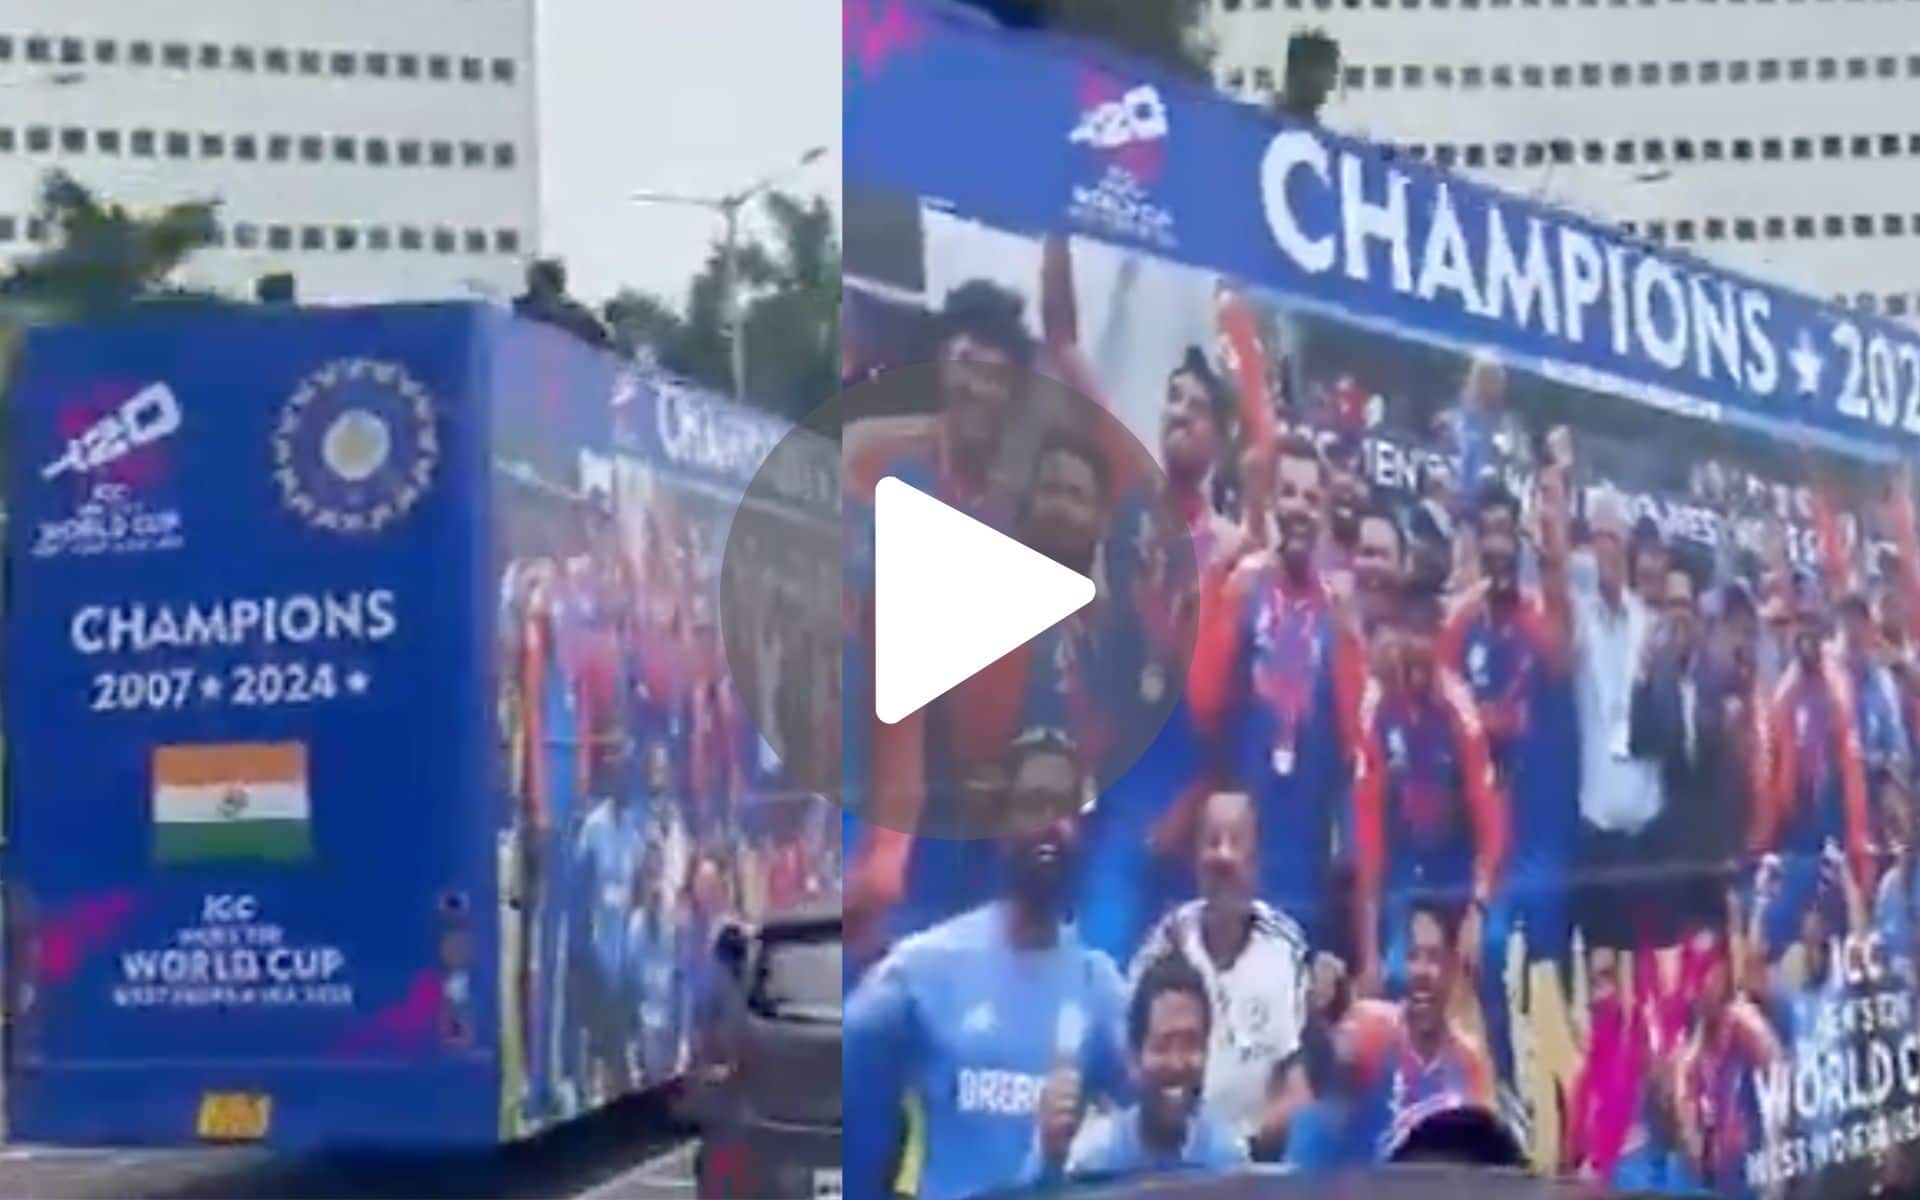 [वीडियो] मुंबई में T20 विश्व कप विजय परेड बस रोहित शर्मा एंड कंपनी के स्वागत के लिए तैयार